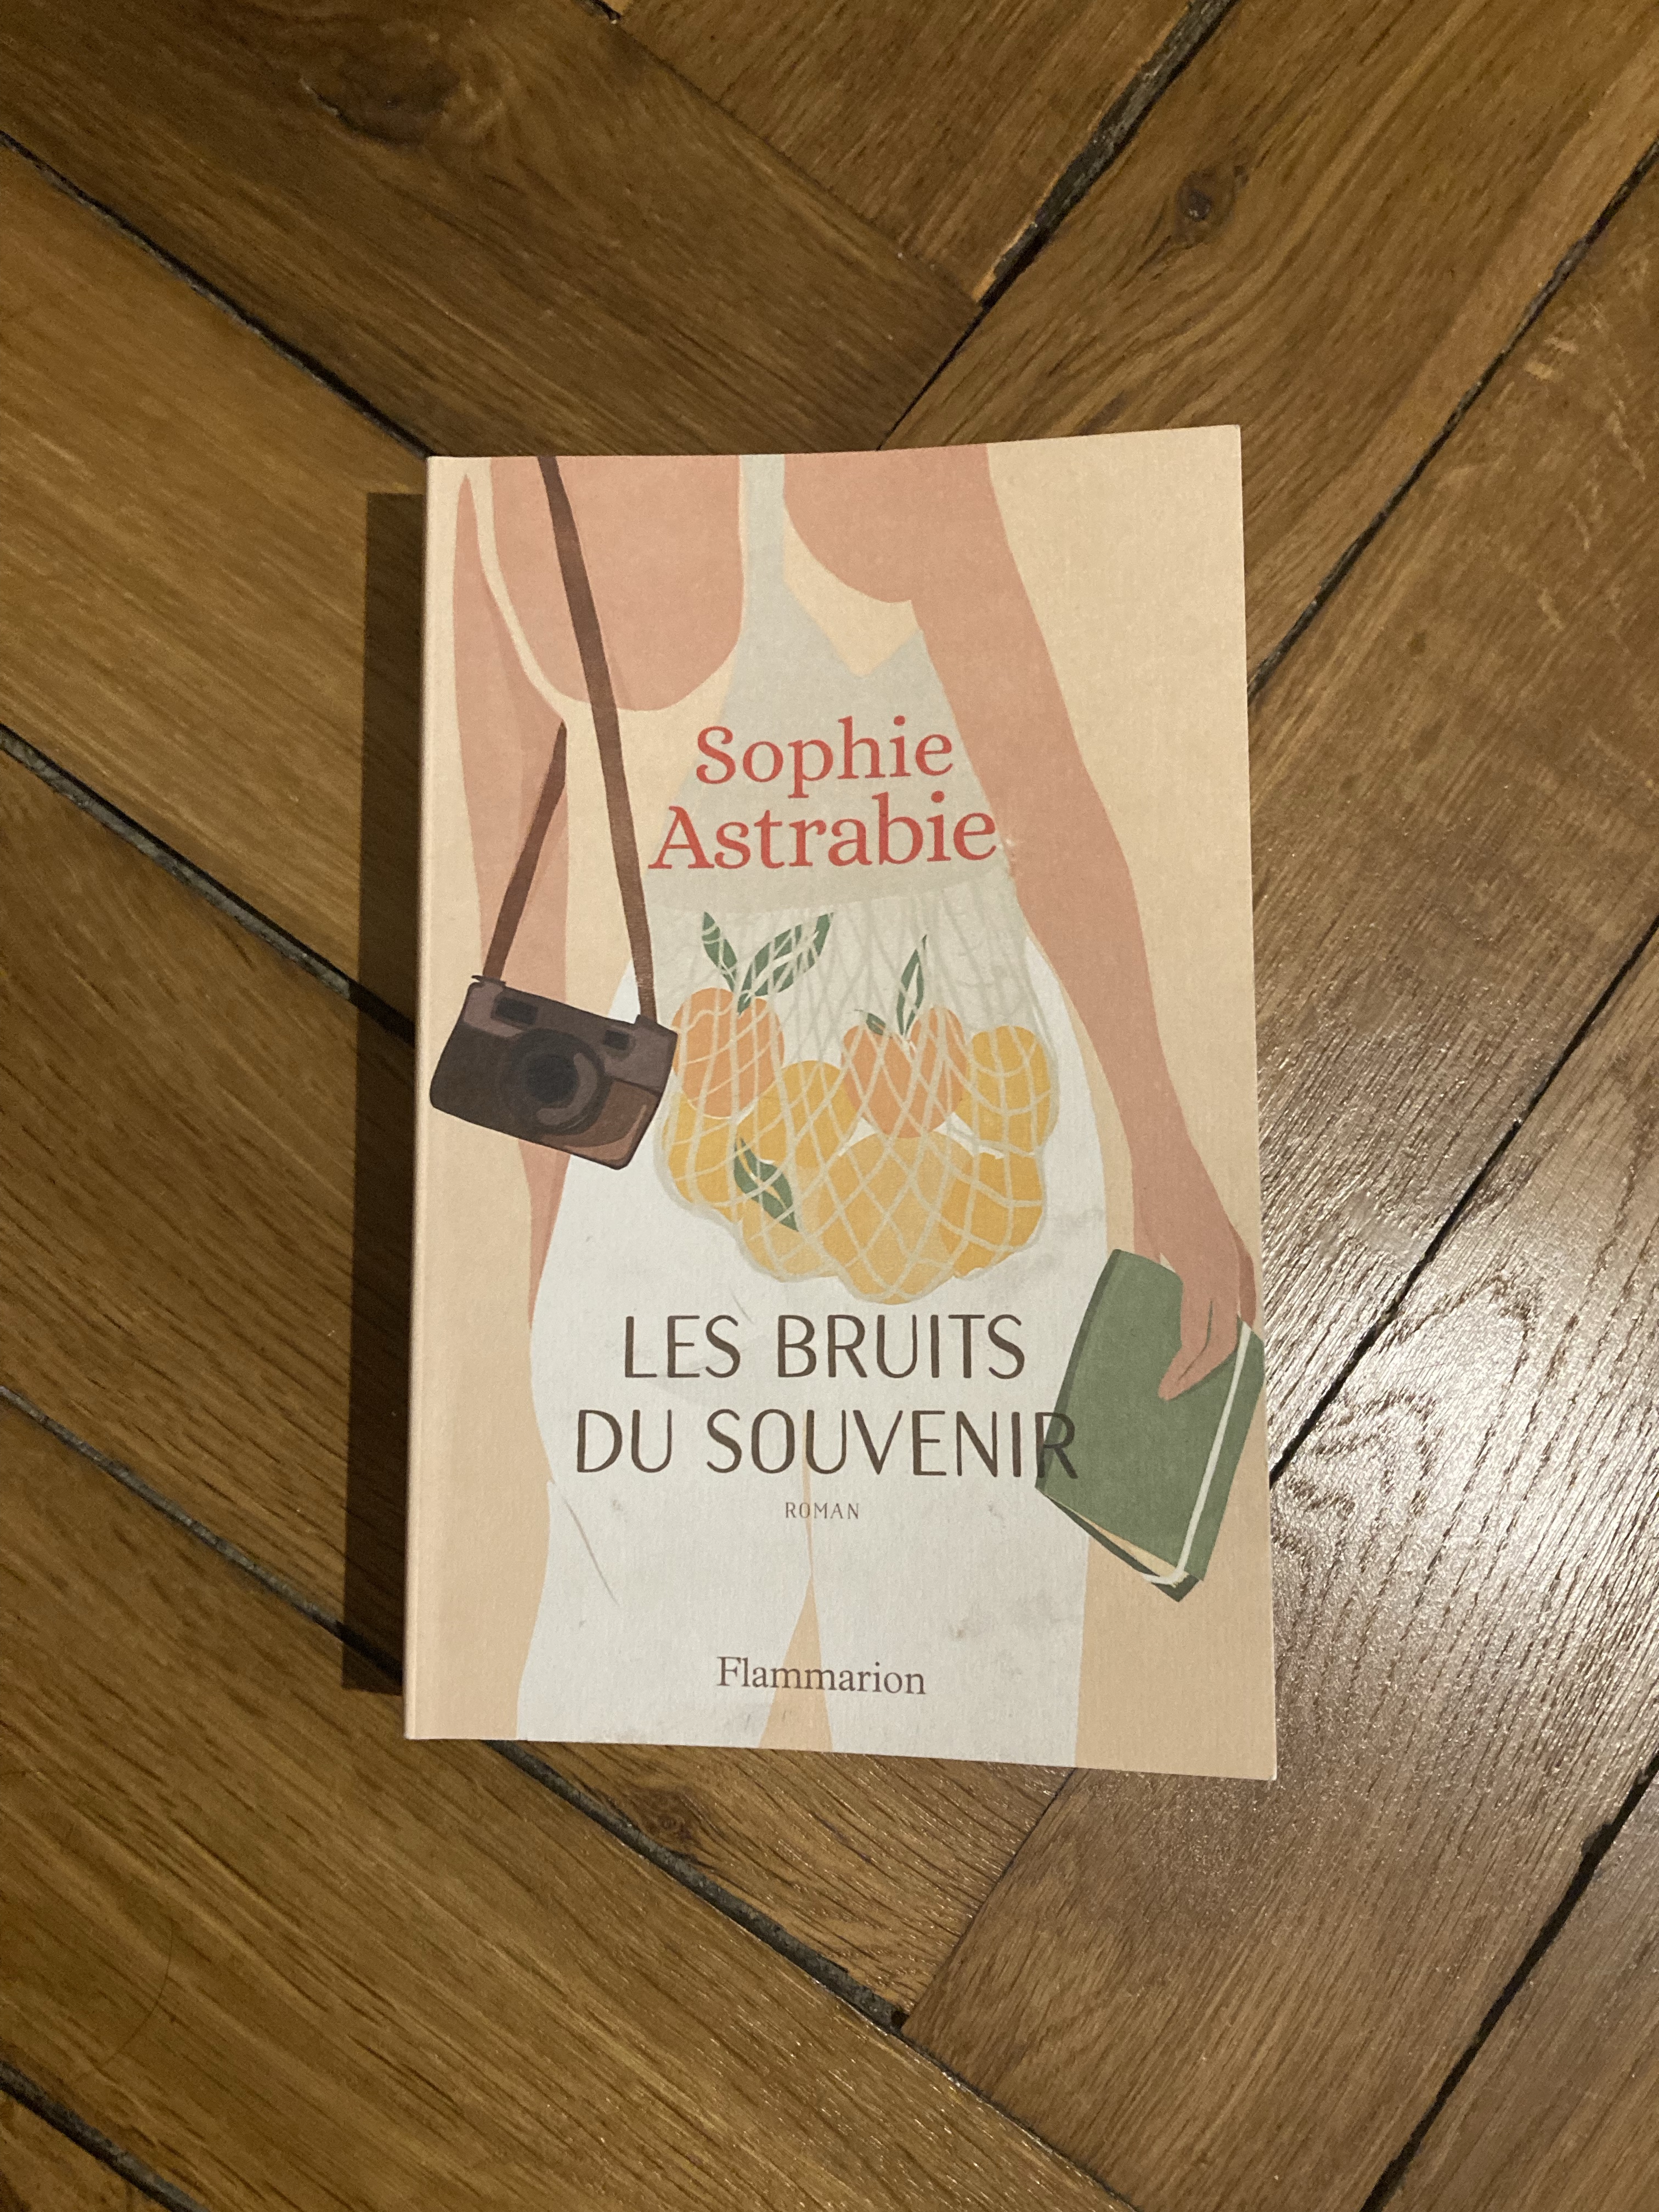 Les Bruits du souvenir by Sophie Astrabie